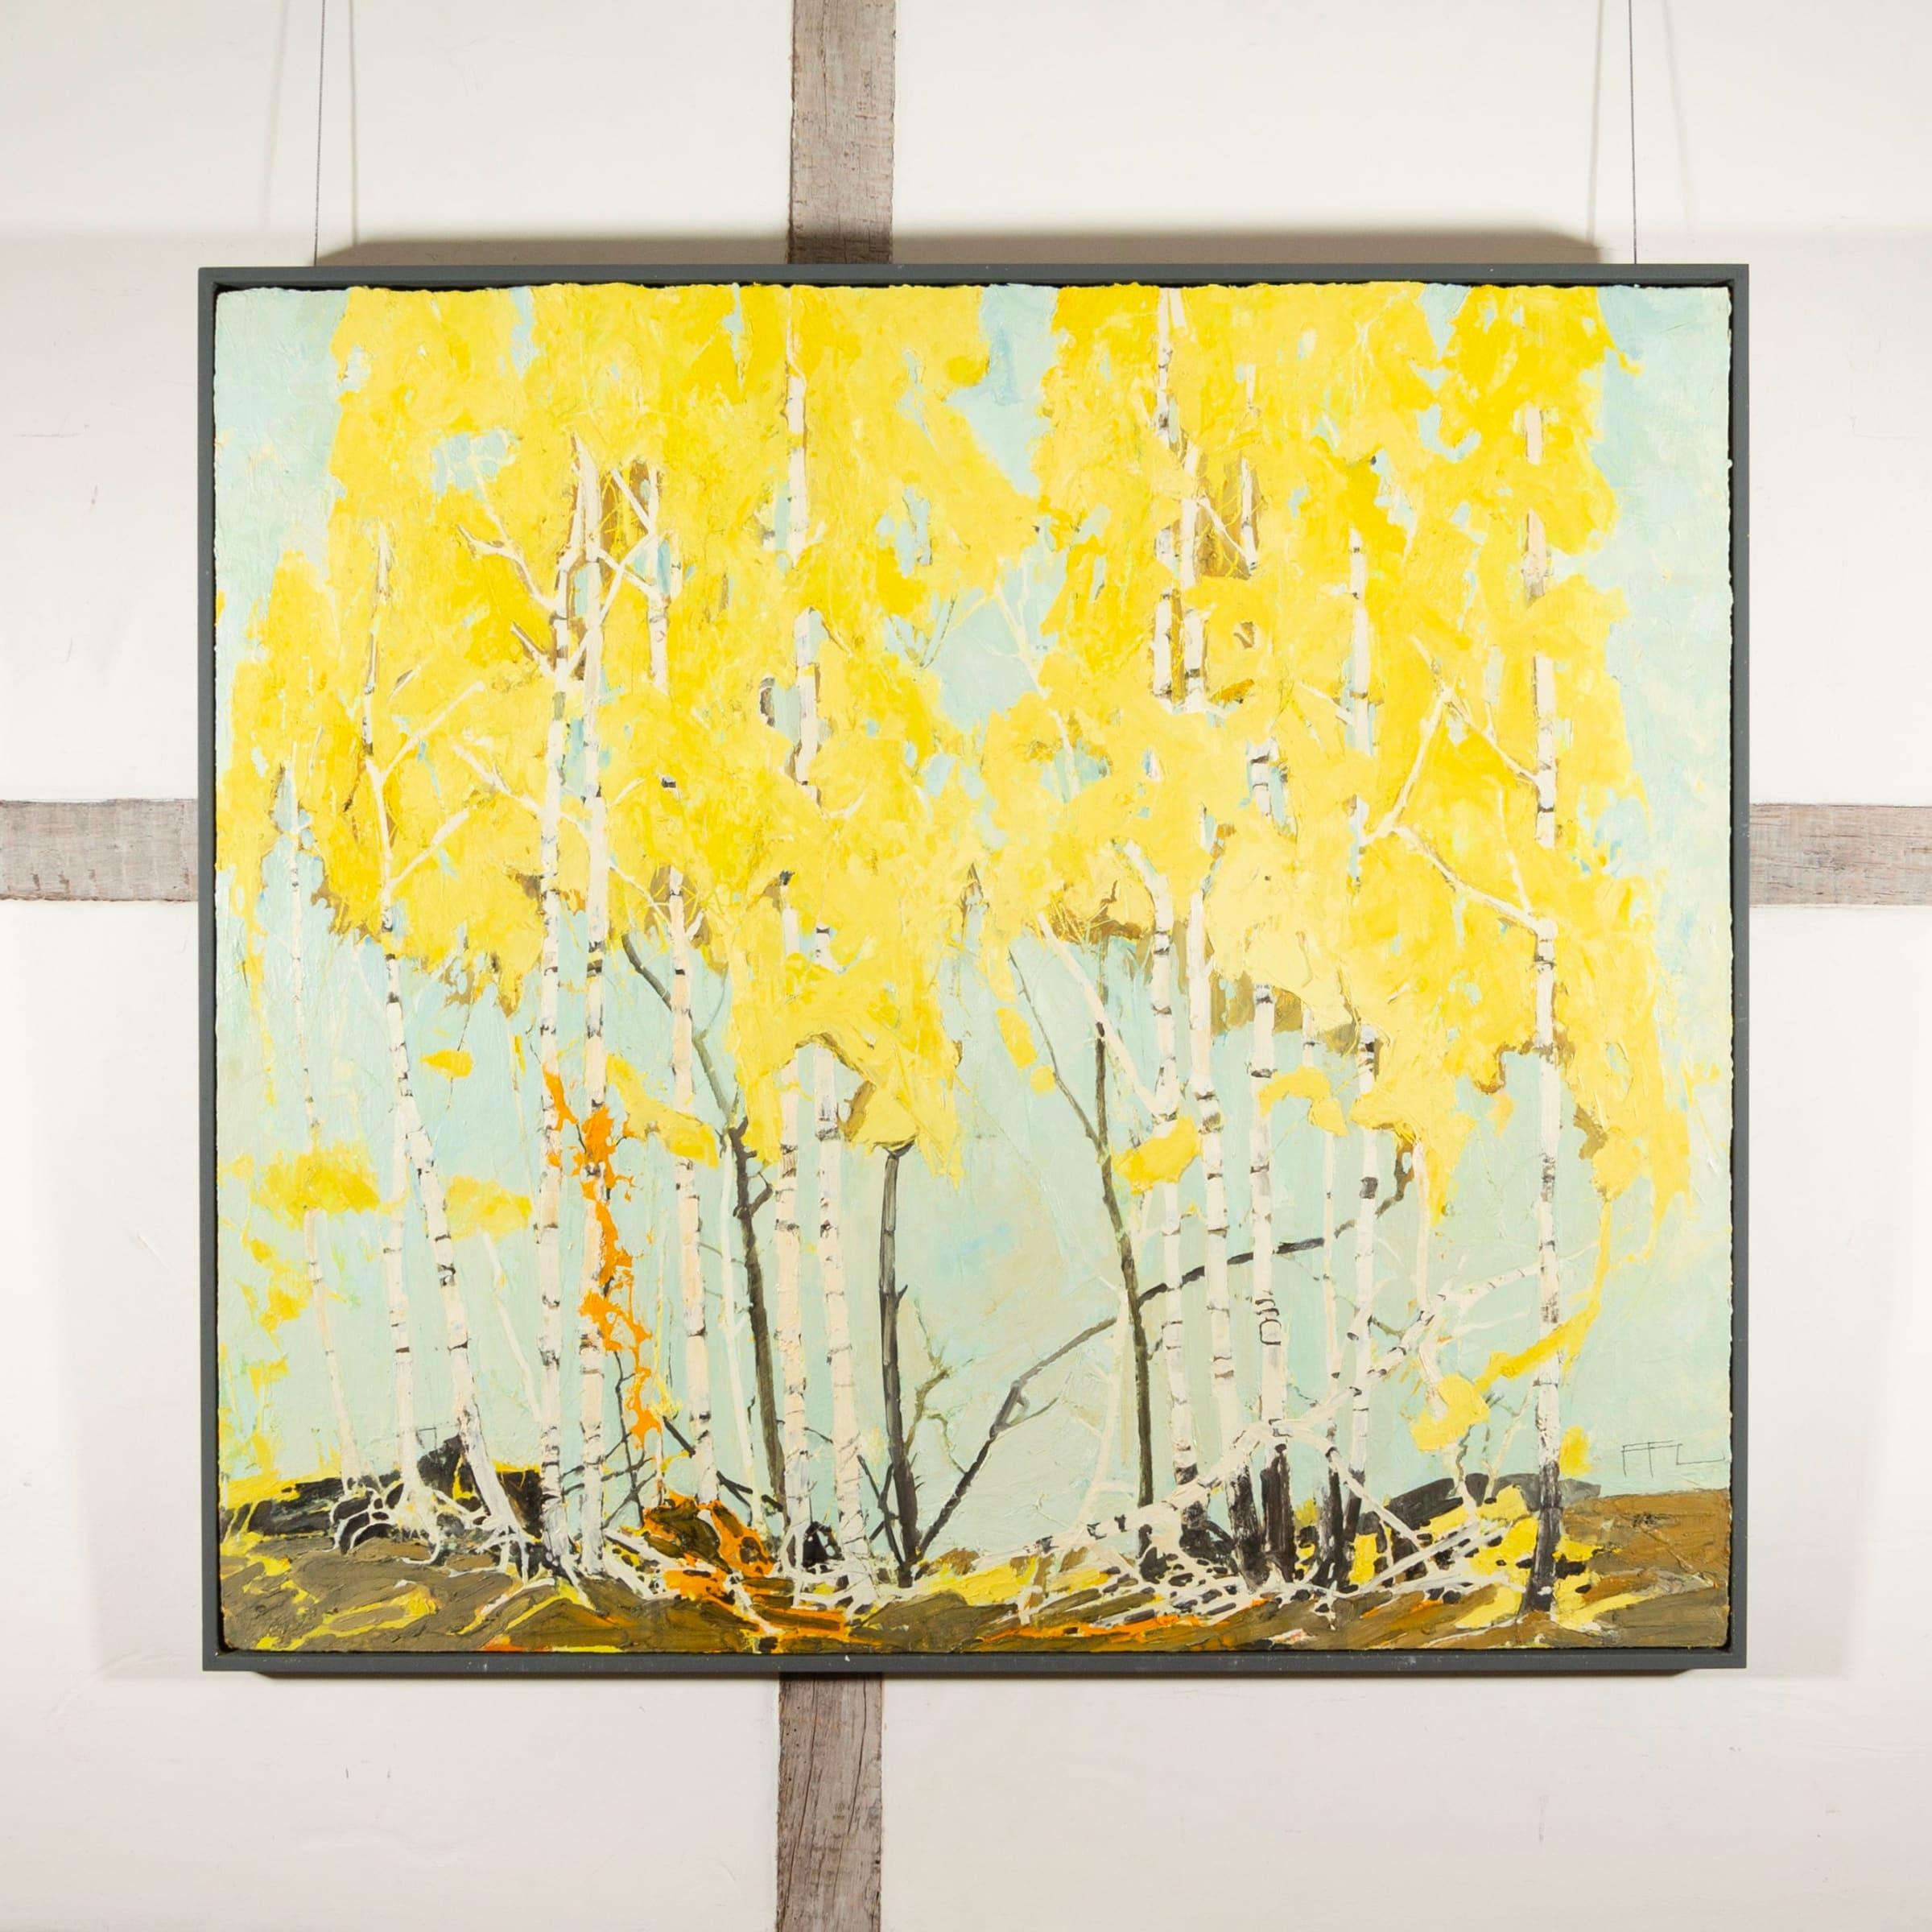 Ramble Through Golden Birch, peinture à l'huile sur carton de Ffiona Lewis B. 1964, 2019

Informations complémentaires :
Médium : Huile sur panneau
Dimensions : 92 x 102 cm : 92 x 102 cm
36 1/4 x 40 1/8 in
Signé, titré et daté

Ffiona Lewis est née